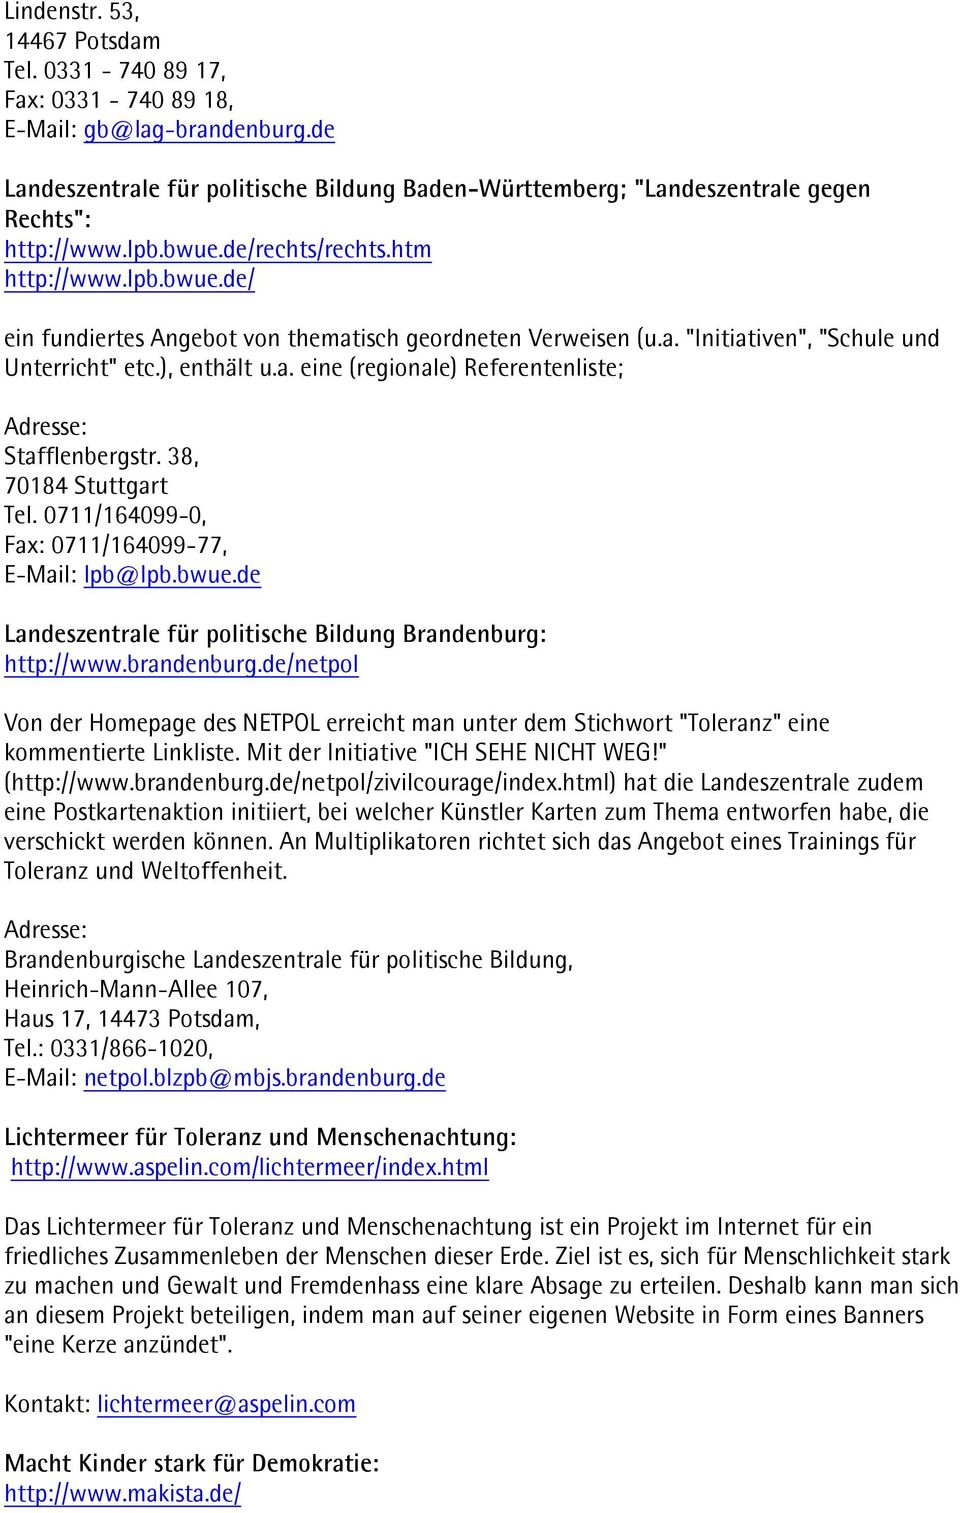 38, 70184 Stuttgart Tel. 0711/164099-0, Fax: 0711/164099-77, E-Mail: lpb@lpb.bwue.de Landeszentrale für politische Bildung Brandenburg: http://www.brandenburg.